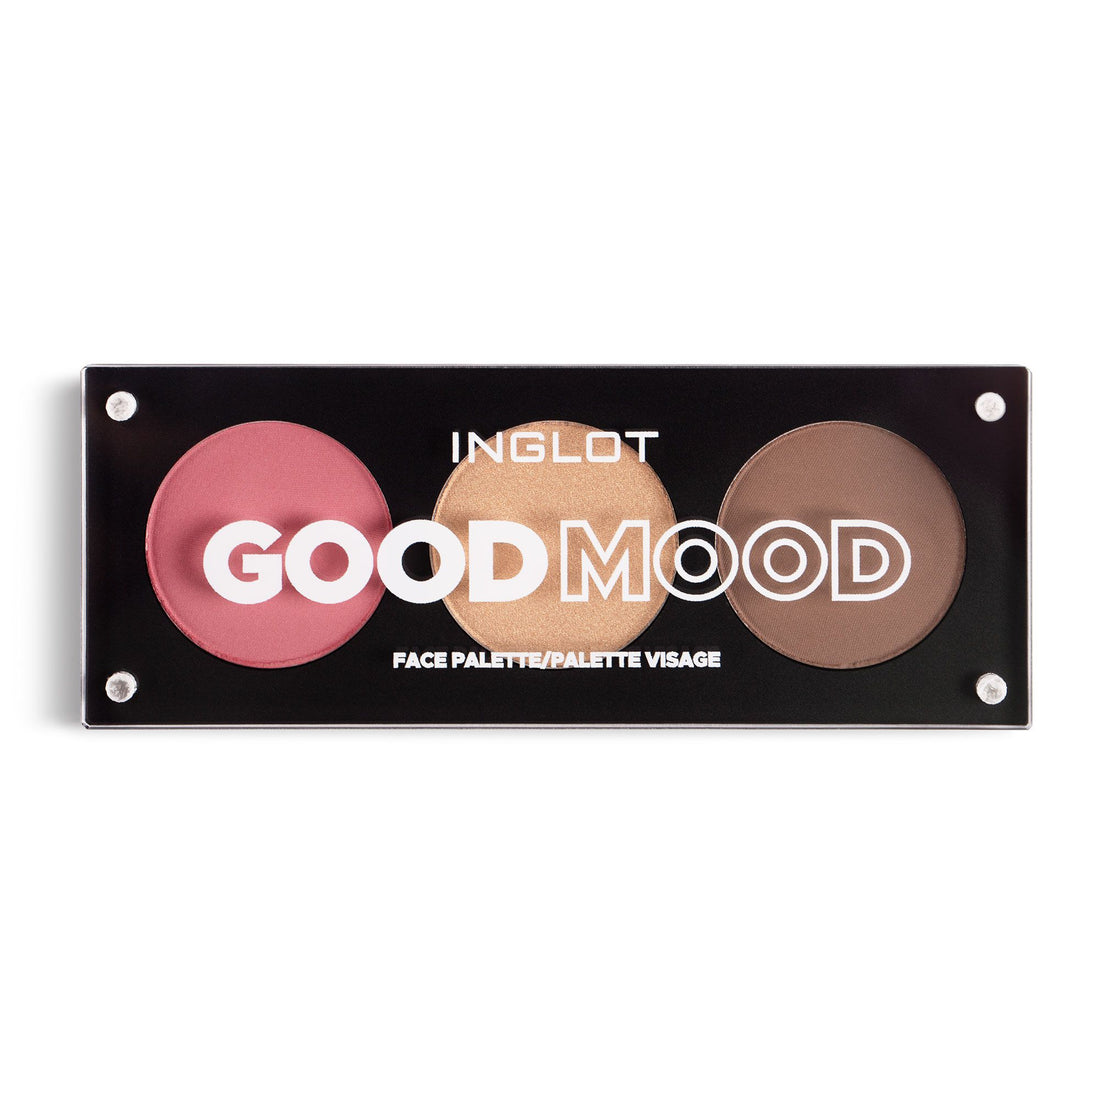 Good Mood Face Palette - make-up palette - Inglot Cosmetics